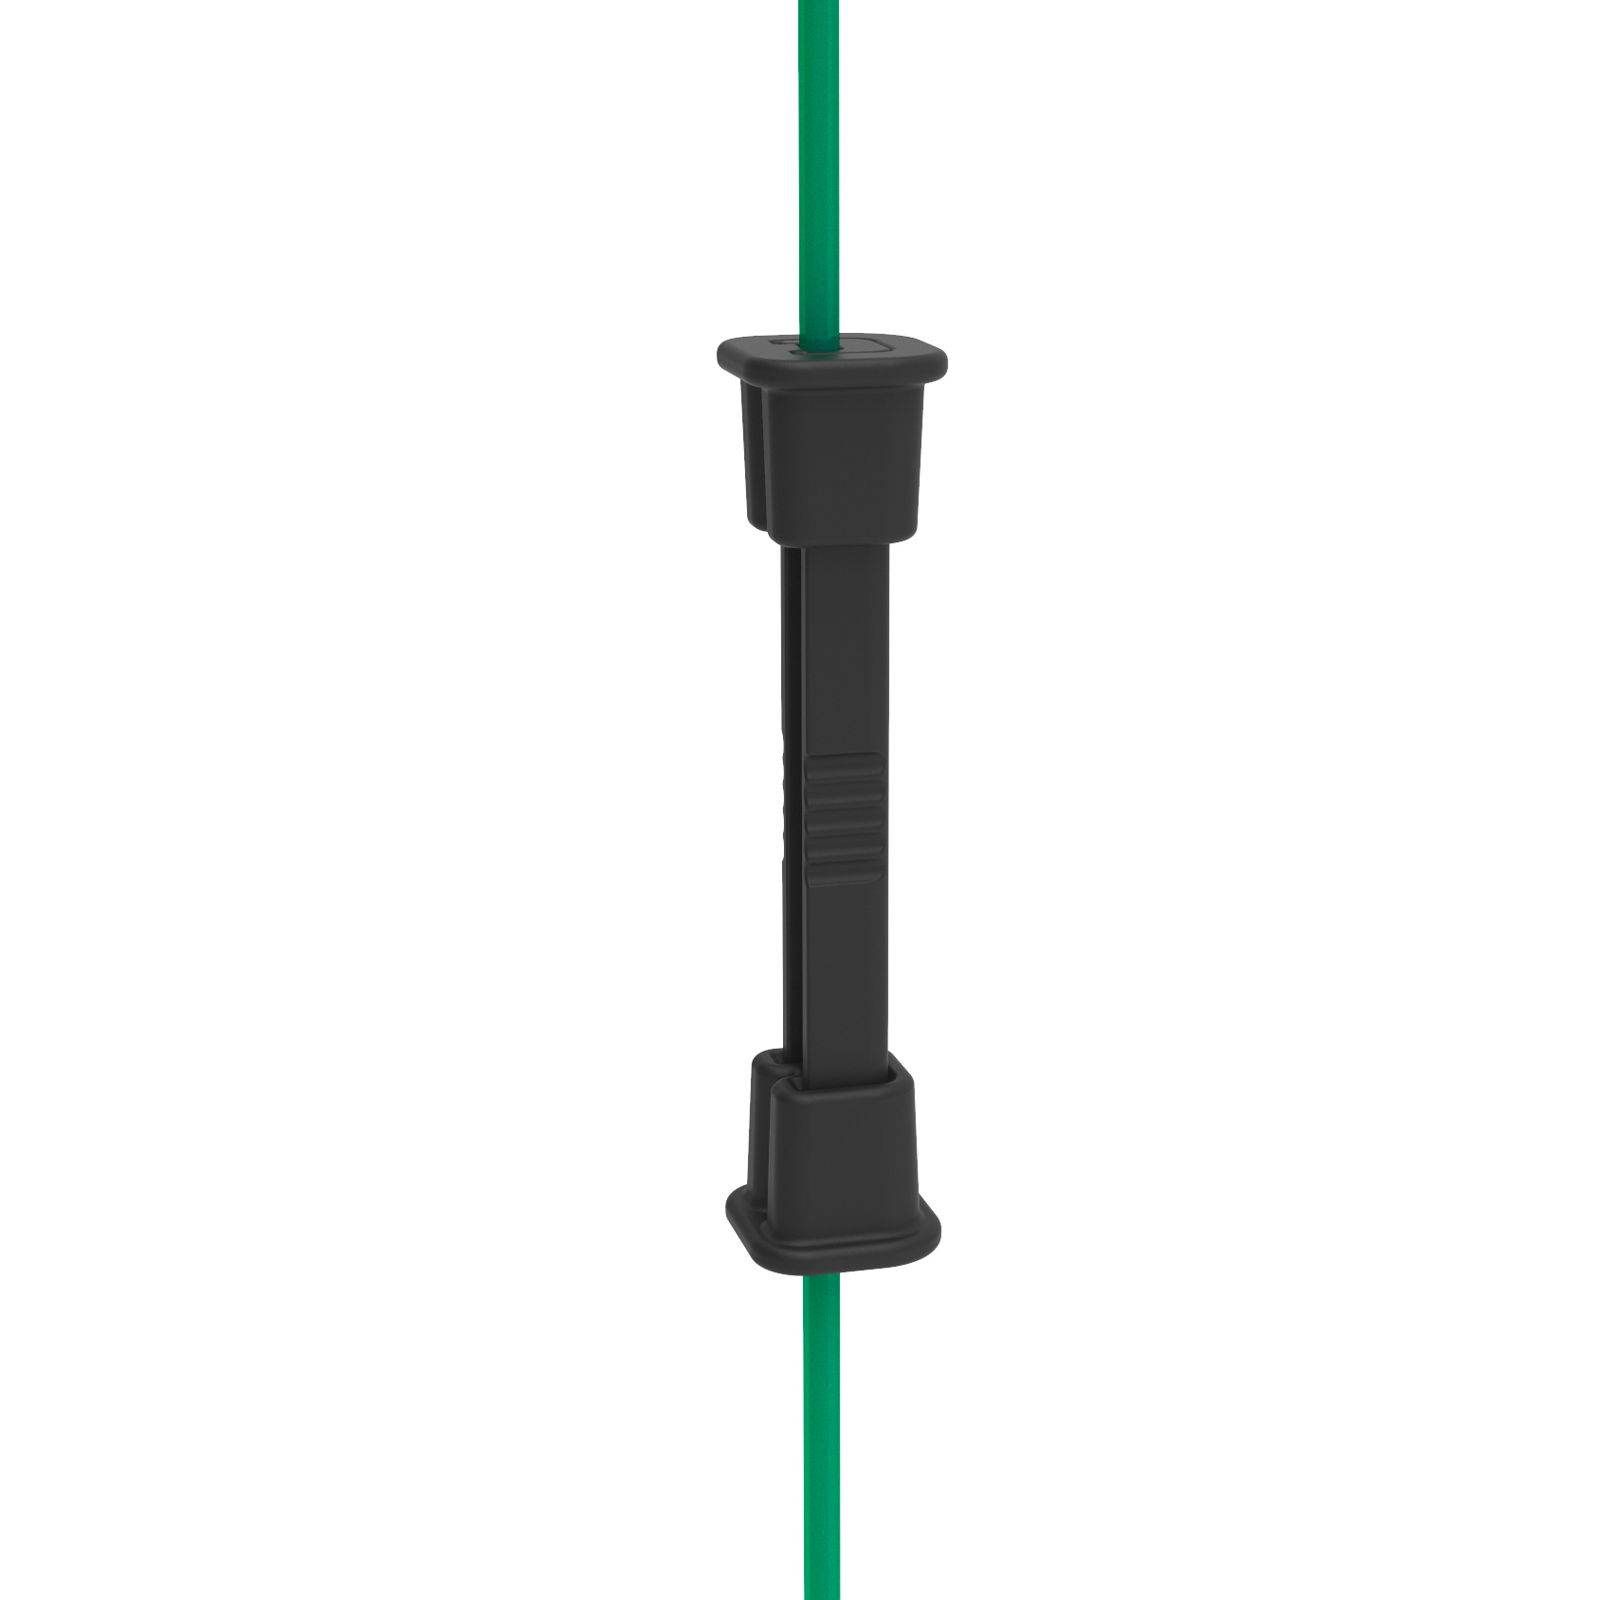 10x Litzclip Vertical Brace Connector for Electric Nets